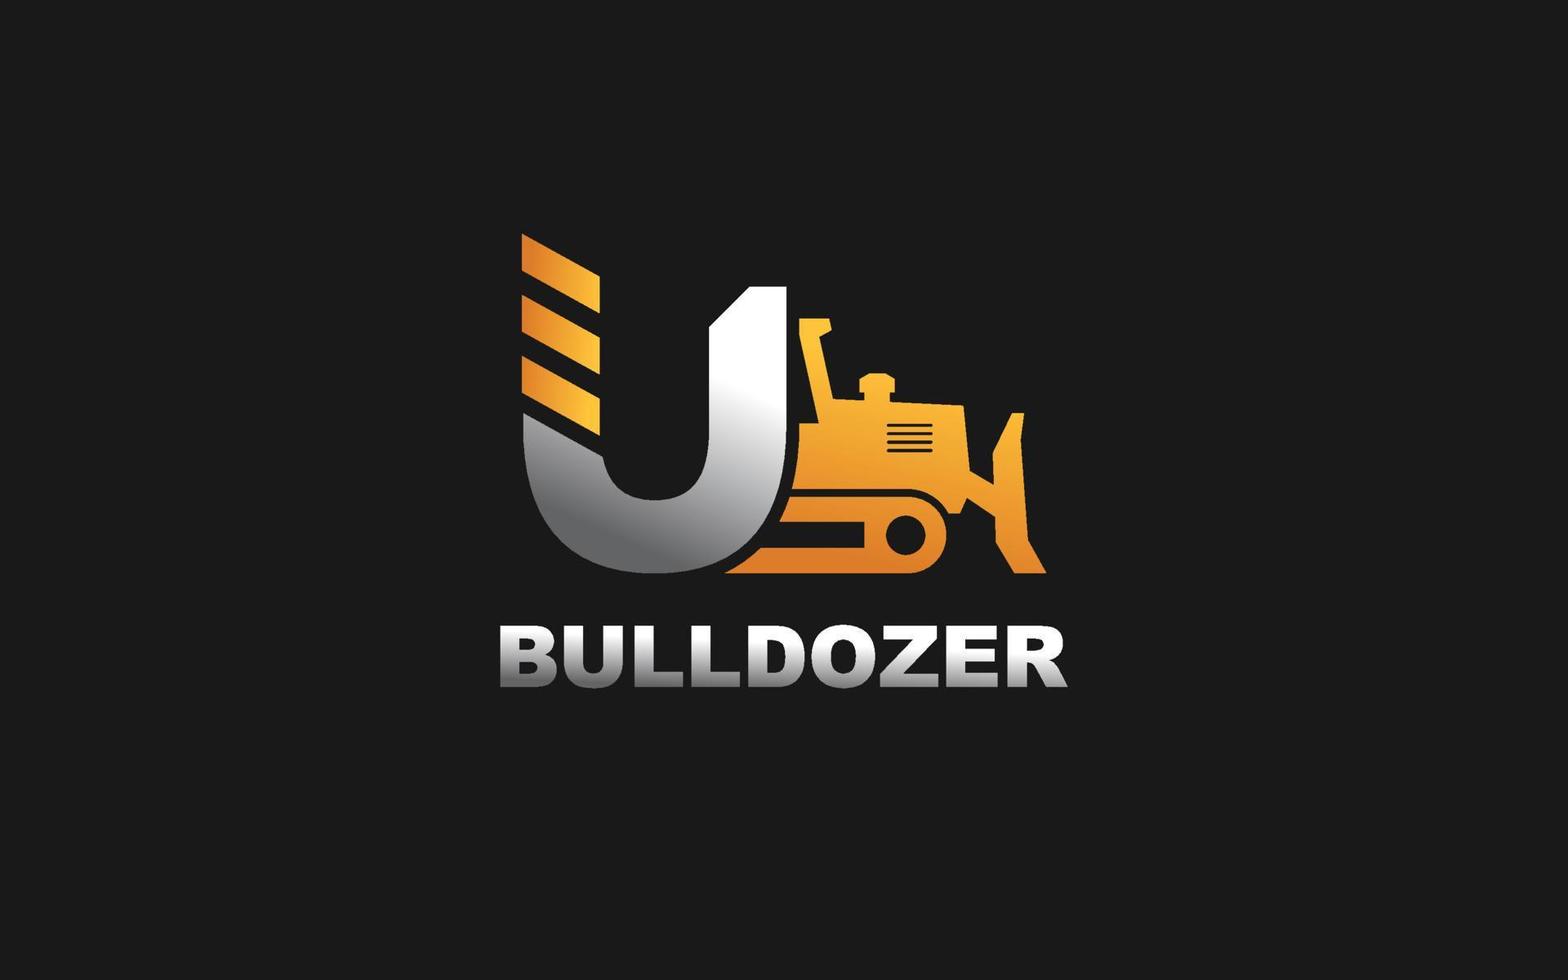 u-Logo Bulldozer für Bauunternehmen. Schwermaschinenschablonen-Vektorillustration für Ihre Marke. vektor